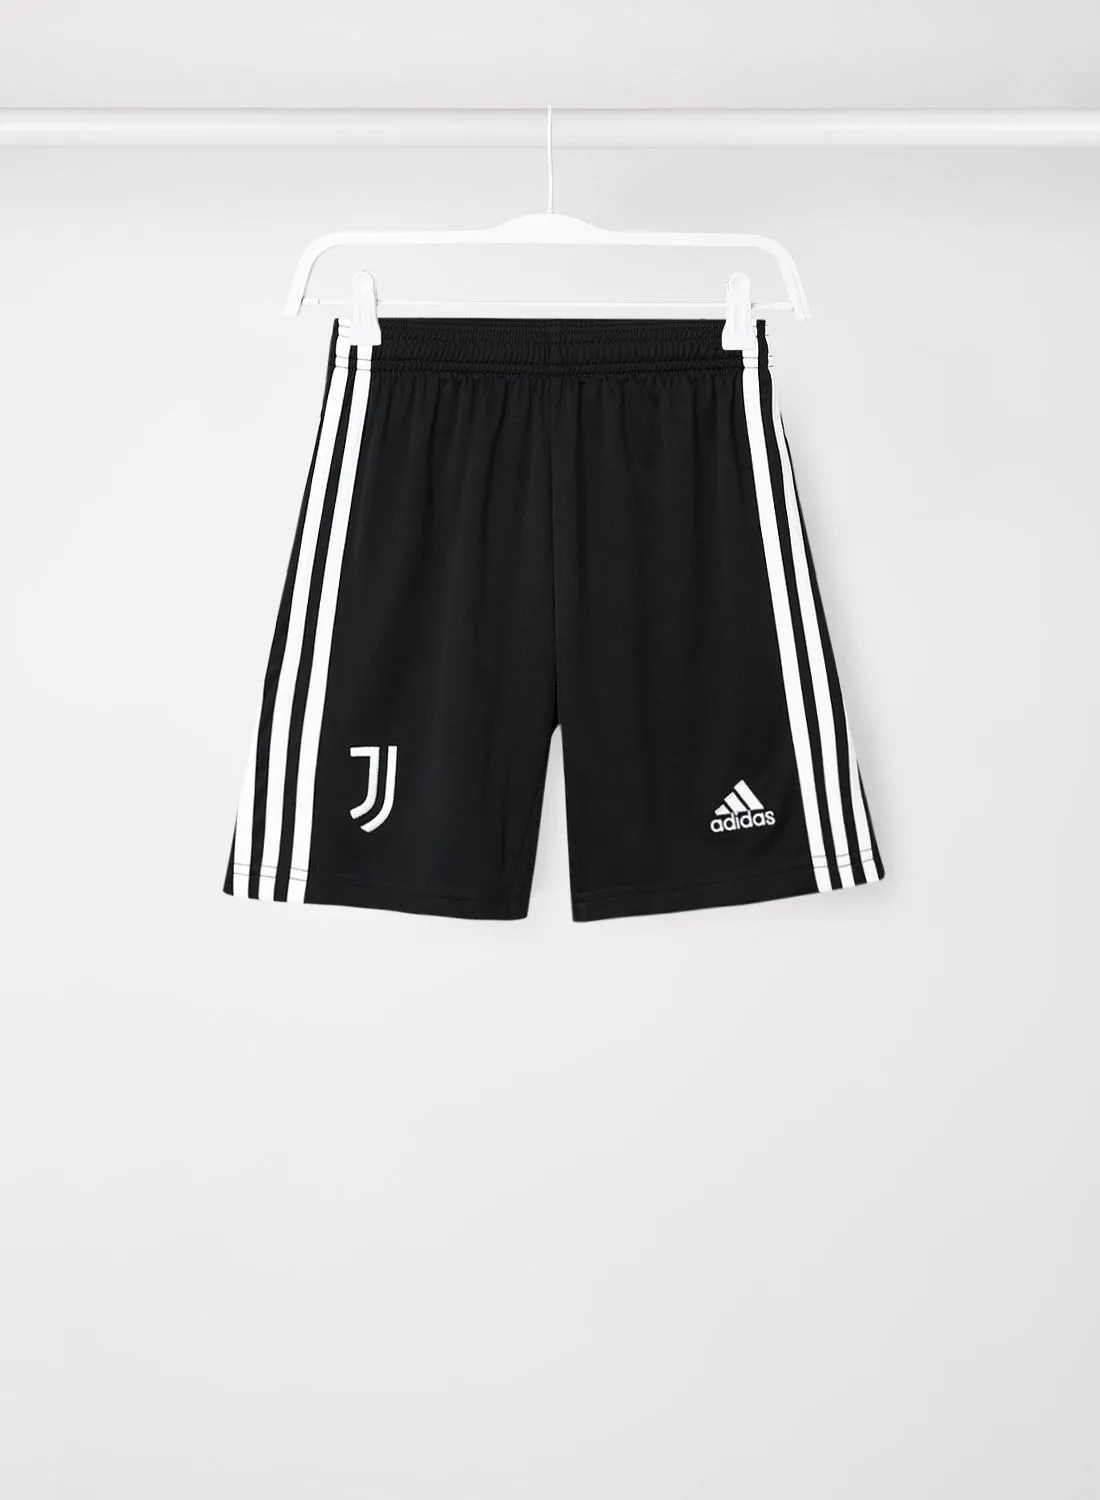 Adidas Boys Juventus Football Club Shorts